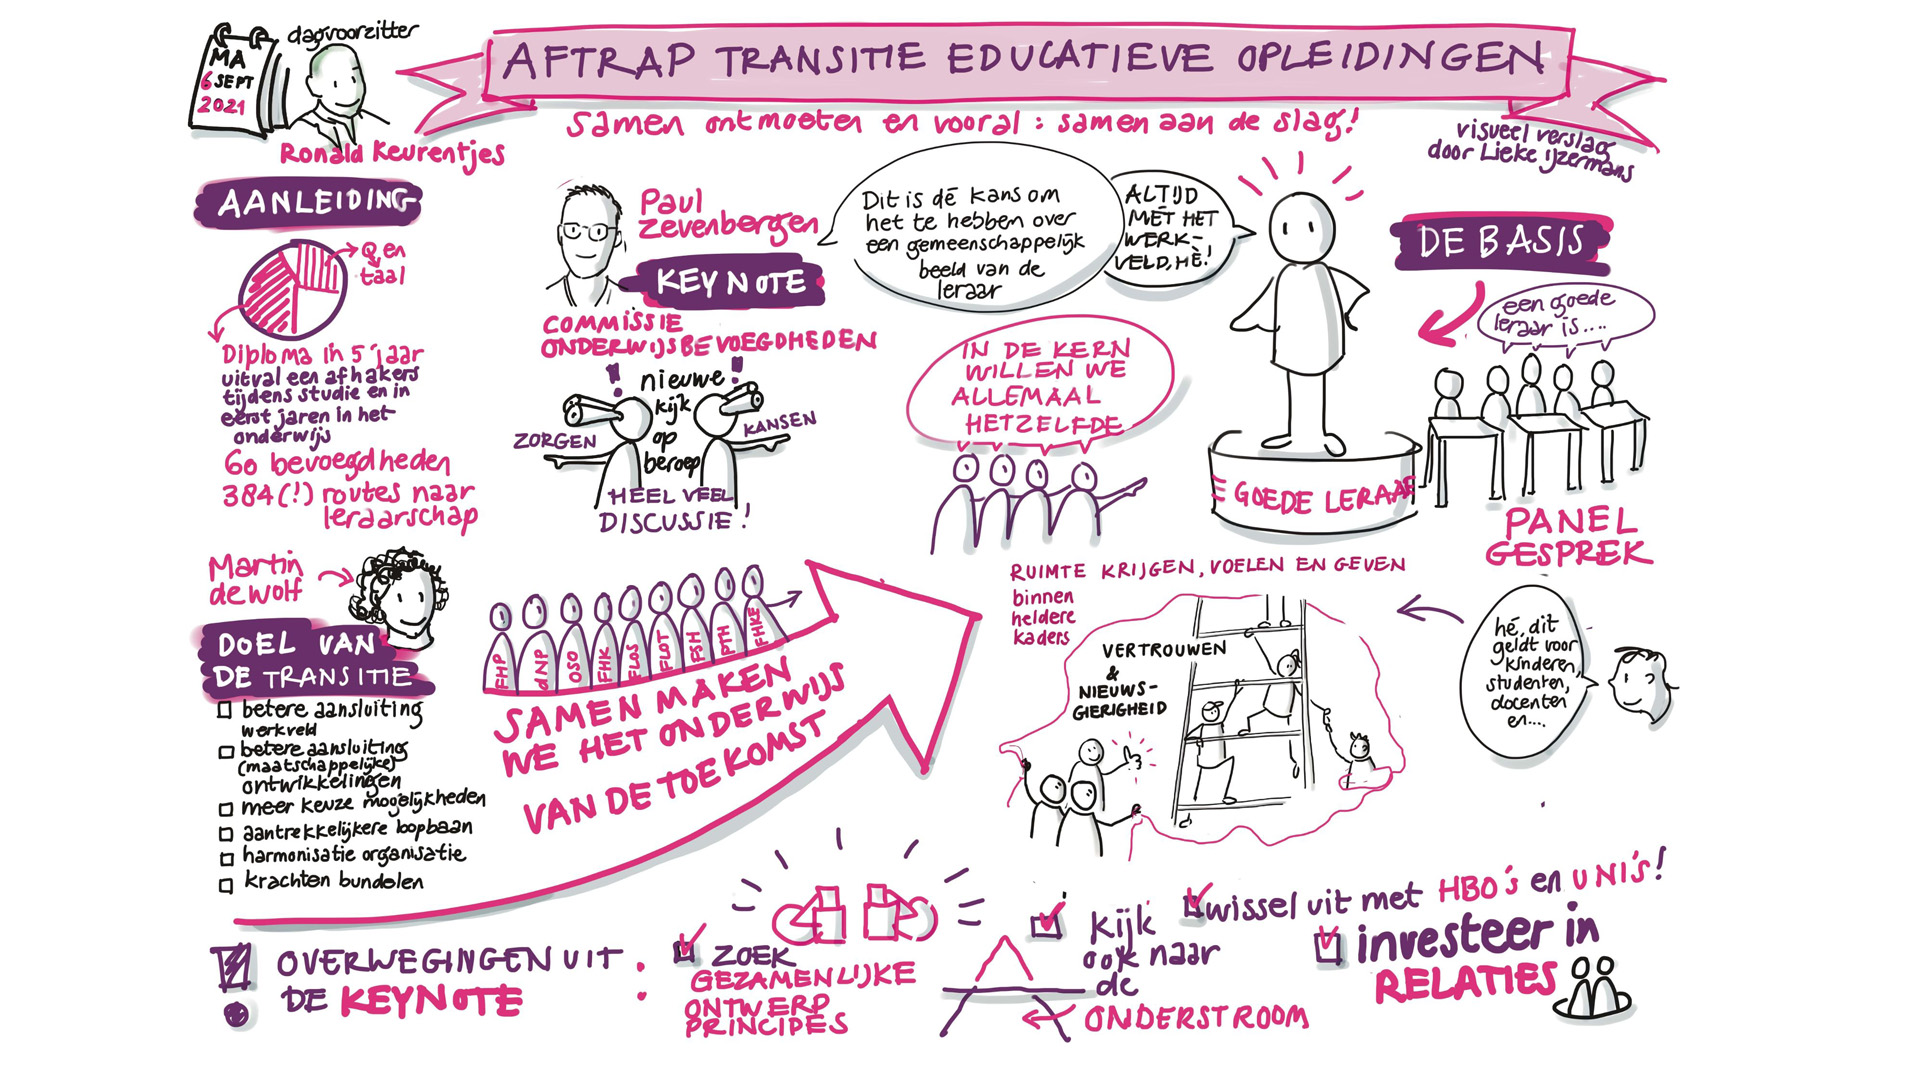 Visueel verslag Aftrap Transitie Educatieve Opleidingen